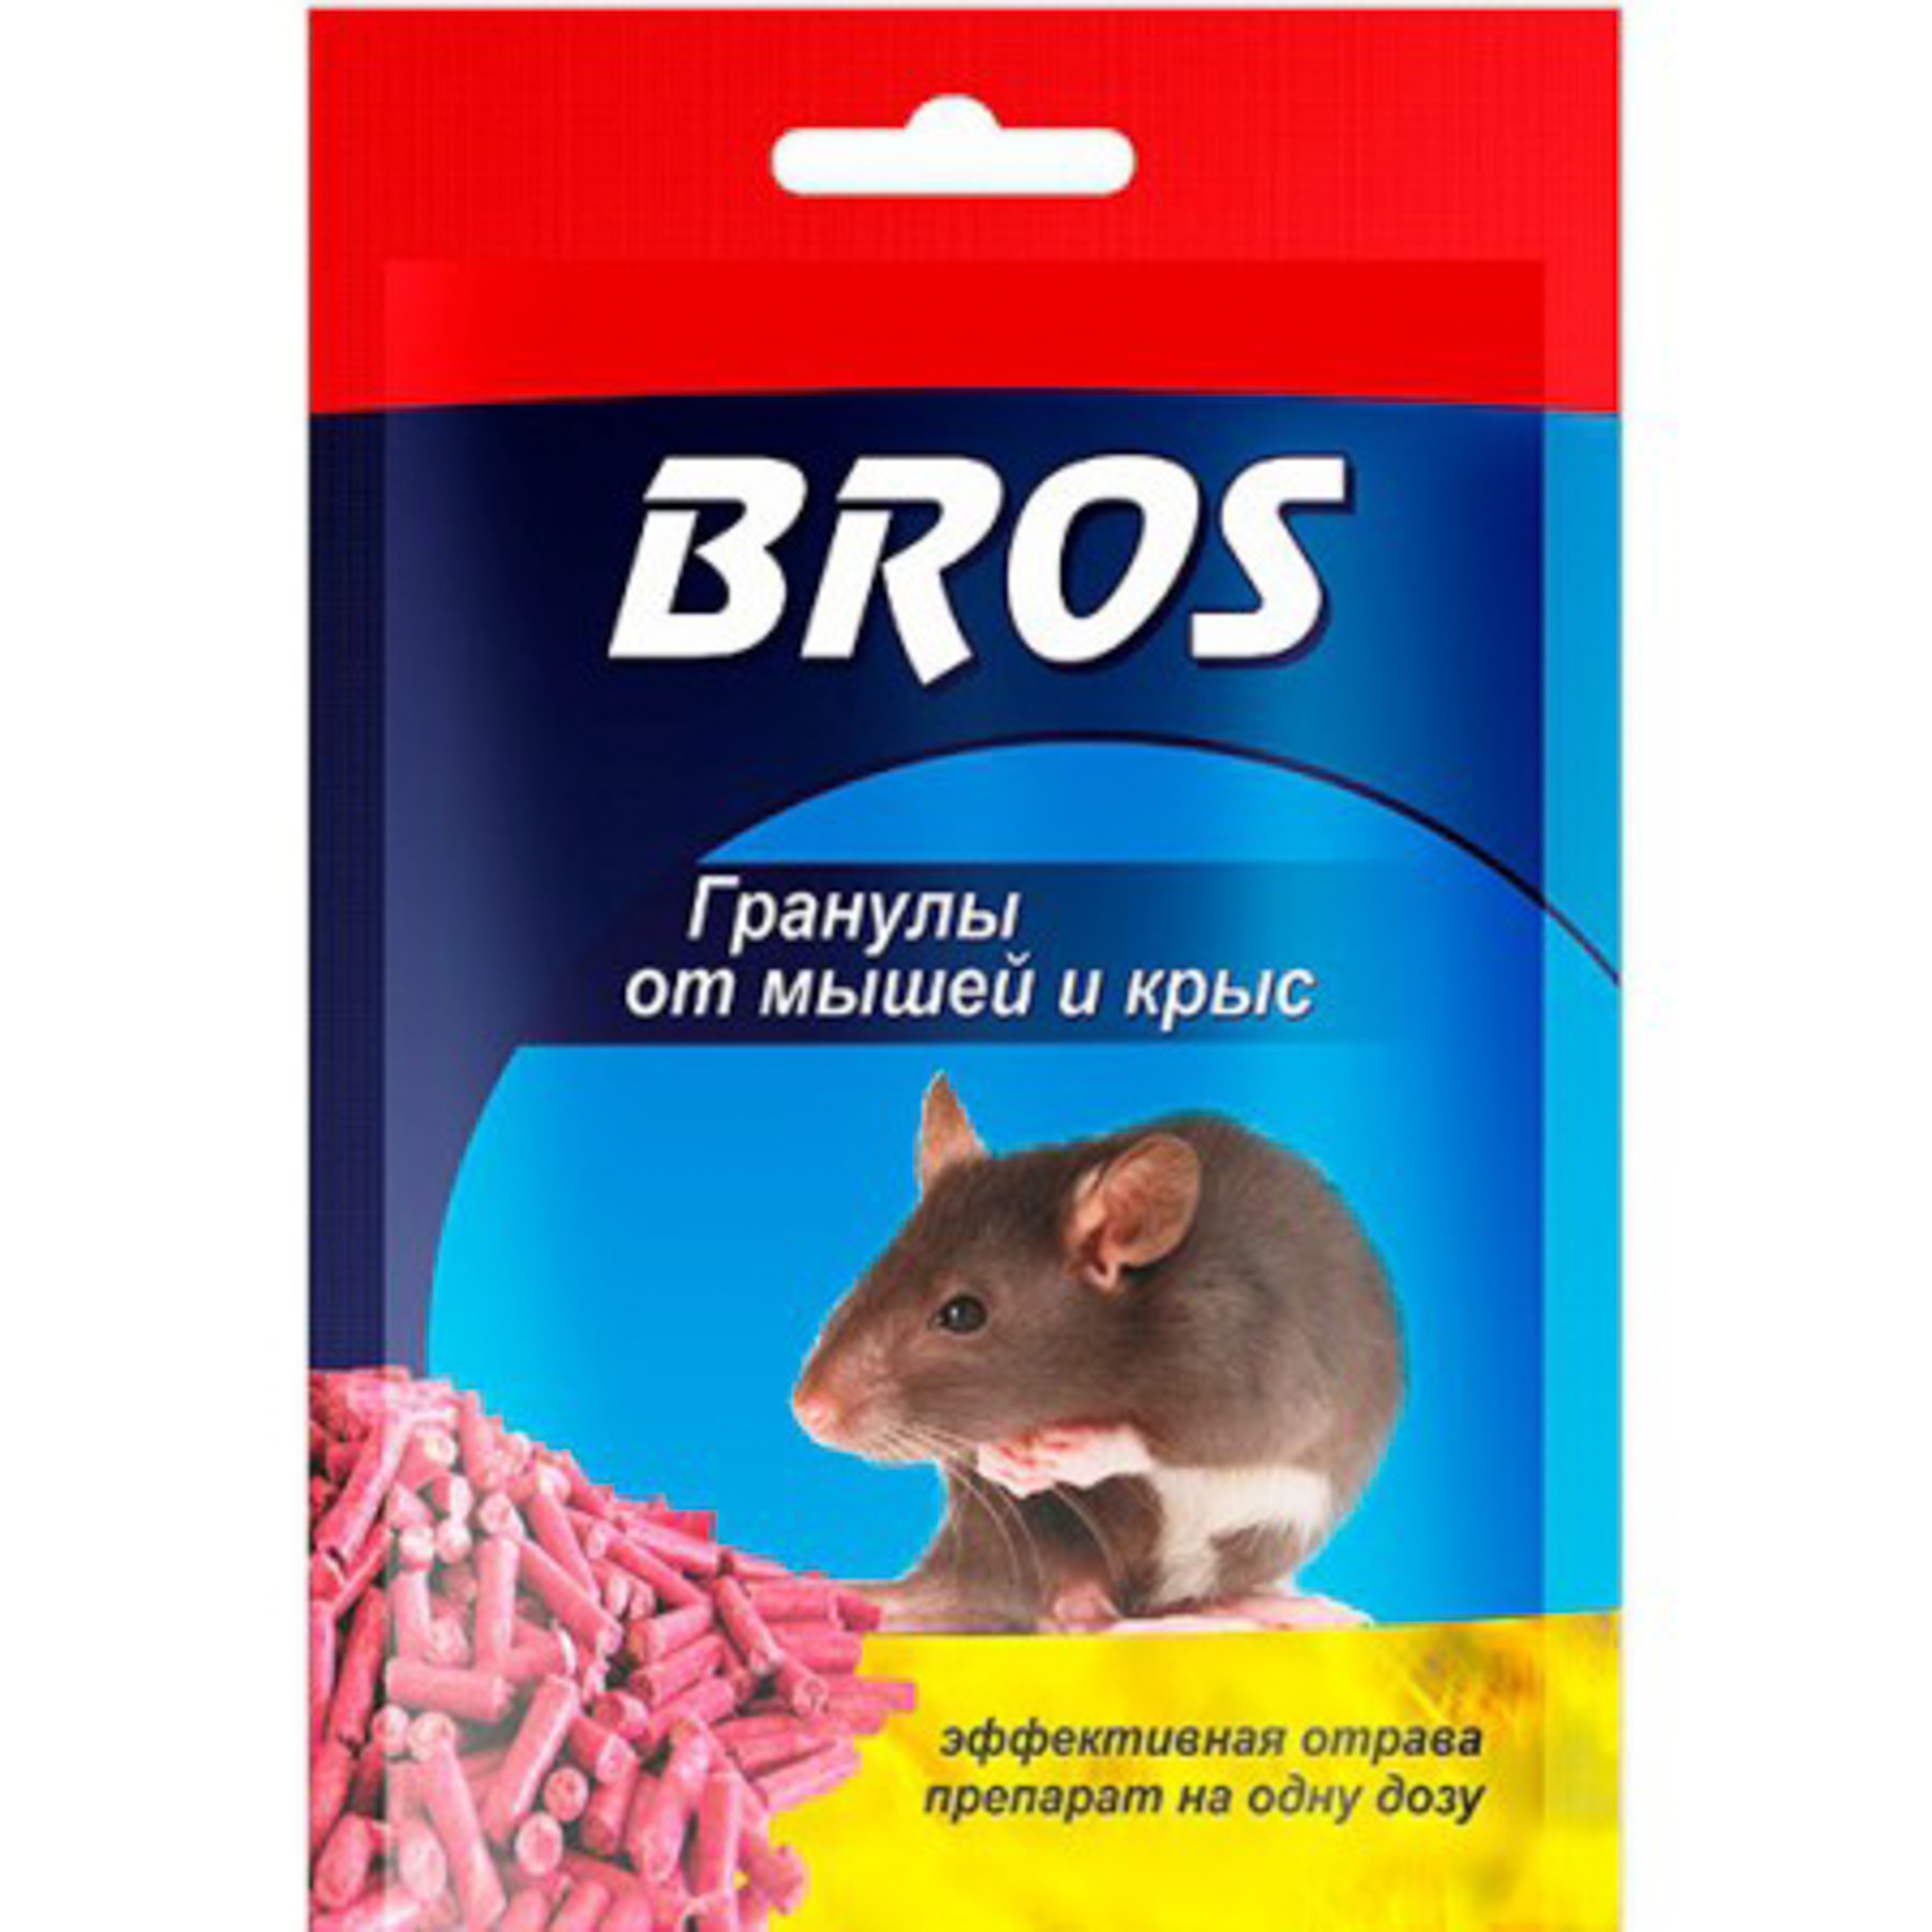 Гранулы BROS от крыс и мышей в пакетике 90 г гранулы от мышей и крыс bros